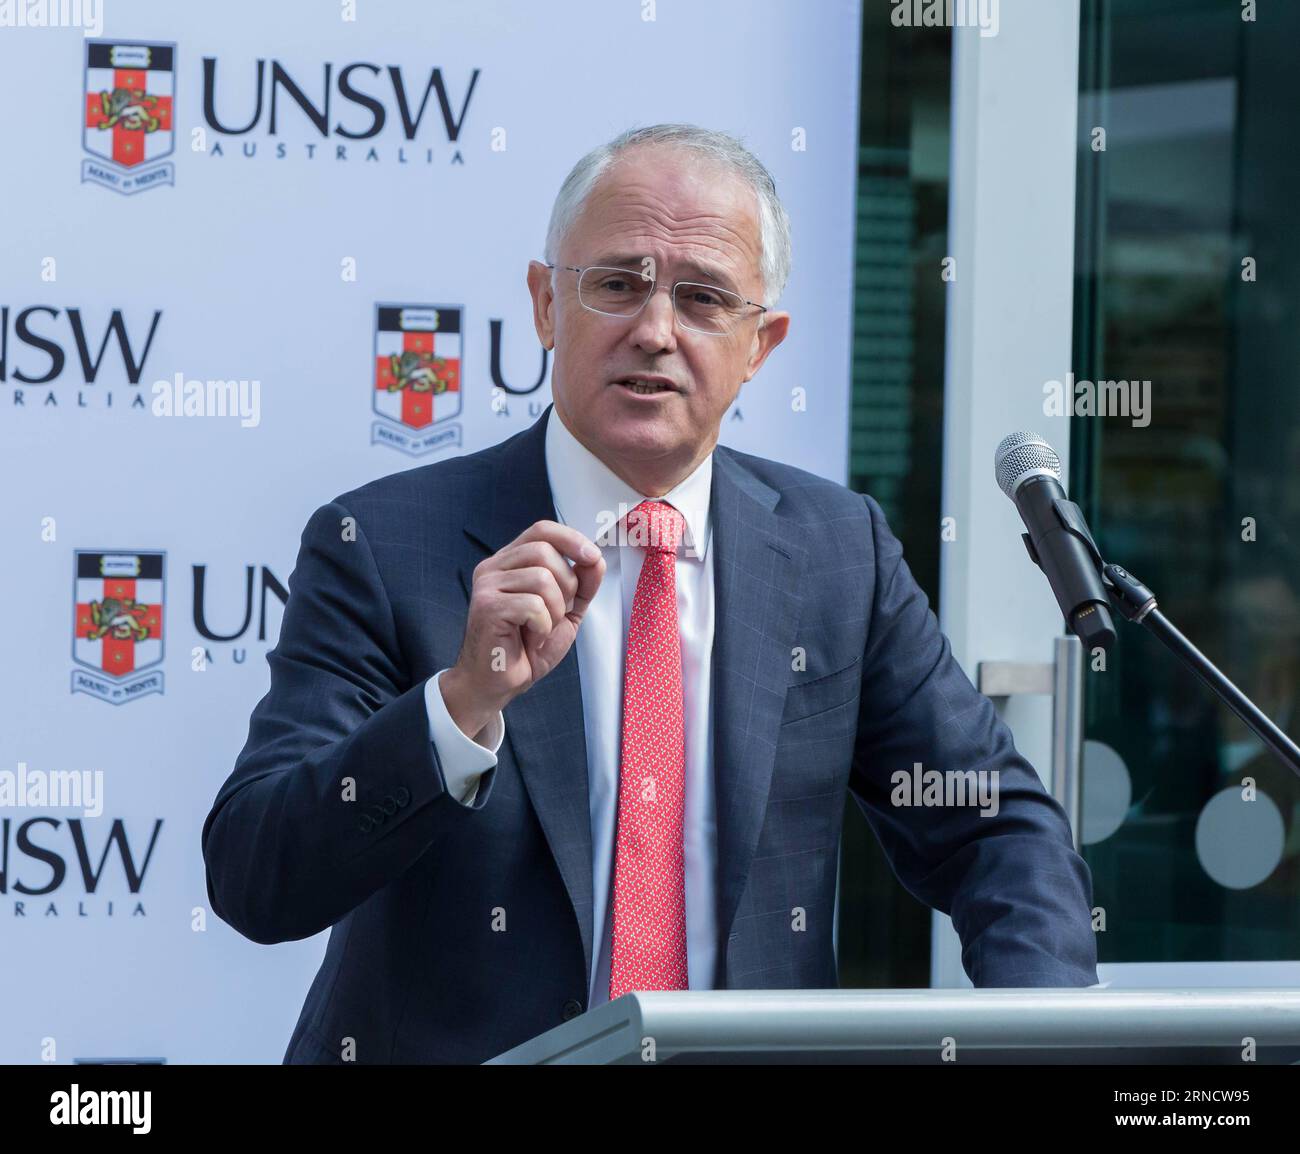 (160422) -- SYDNEY, 22 aprile 2016 -- il primo ministro australiano Malcolm Turnbull parla alla cerimonia di inaugurazione presso l'Università del nuovo Galles del Sud (UNSW) a Sydney, Australia, 22 aprile 2016. L'Australia ha affermato di essere in testa alla corsa internazionale nella comprensione del computing quantistico dopo che il primo ministro Malcolm Turnbull ha visitato una nuova struttura di ricerca. Venerdì l'UNSW ha presentato il suo nuovo complesso di laboratorio di calcolo quantistico, raddoppiando la sua capacità produttiva mentre continua a sostenere la creazione di un processore quantistico basato su silicio, un ostacolo fondamentale nella corsa globale per la creazione di comput quantistico Foto Stock